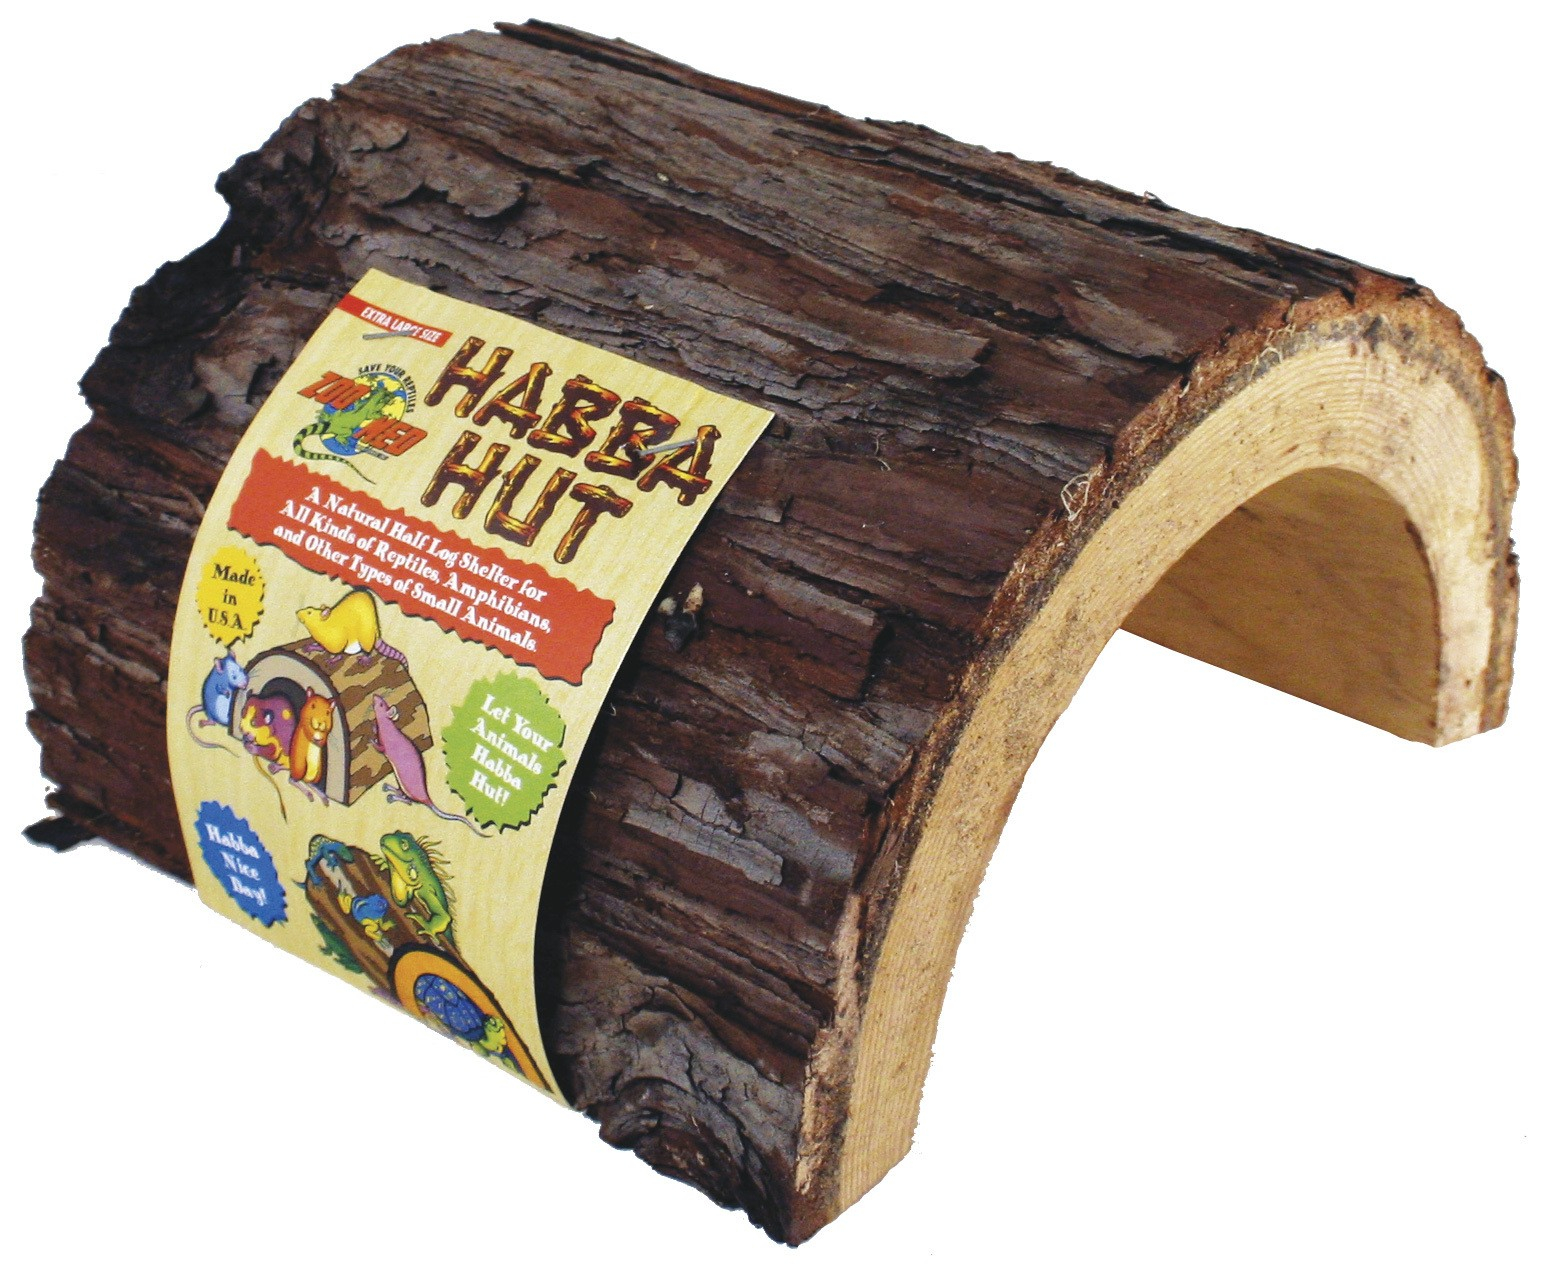 Esconderijo de madeira natural para répteis, anfíbios - 3 tamanhos disponíveis